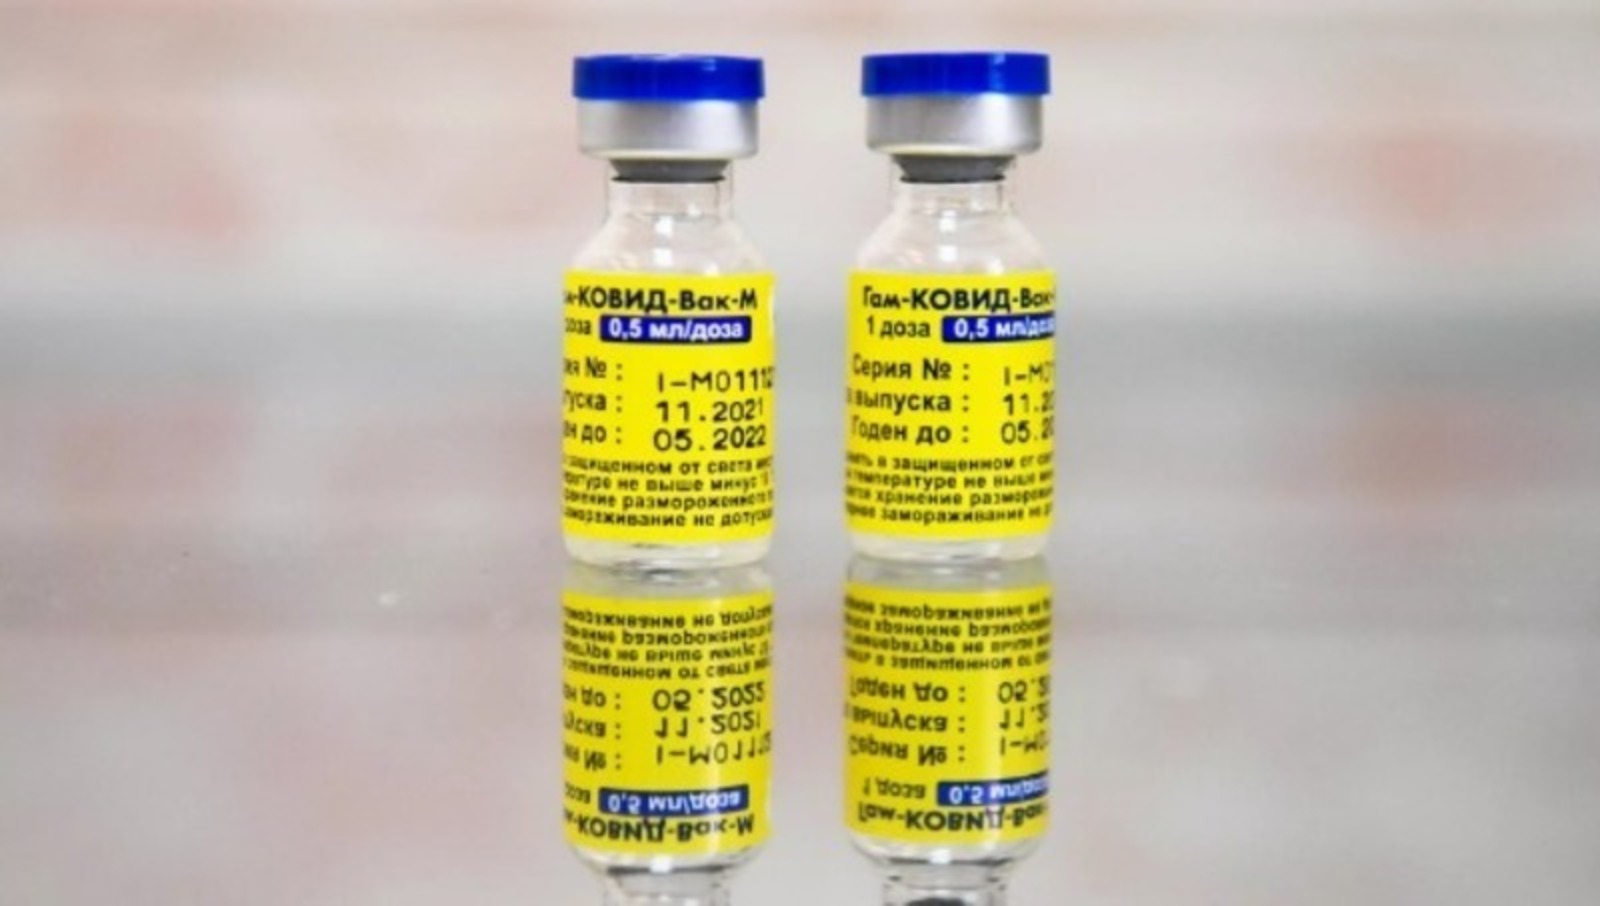 6-11 йәшлек балаларға коронавирустан вакцинаны тикшерәсәктәр